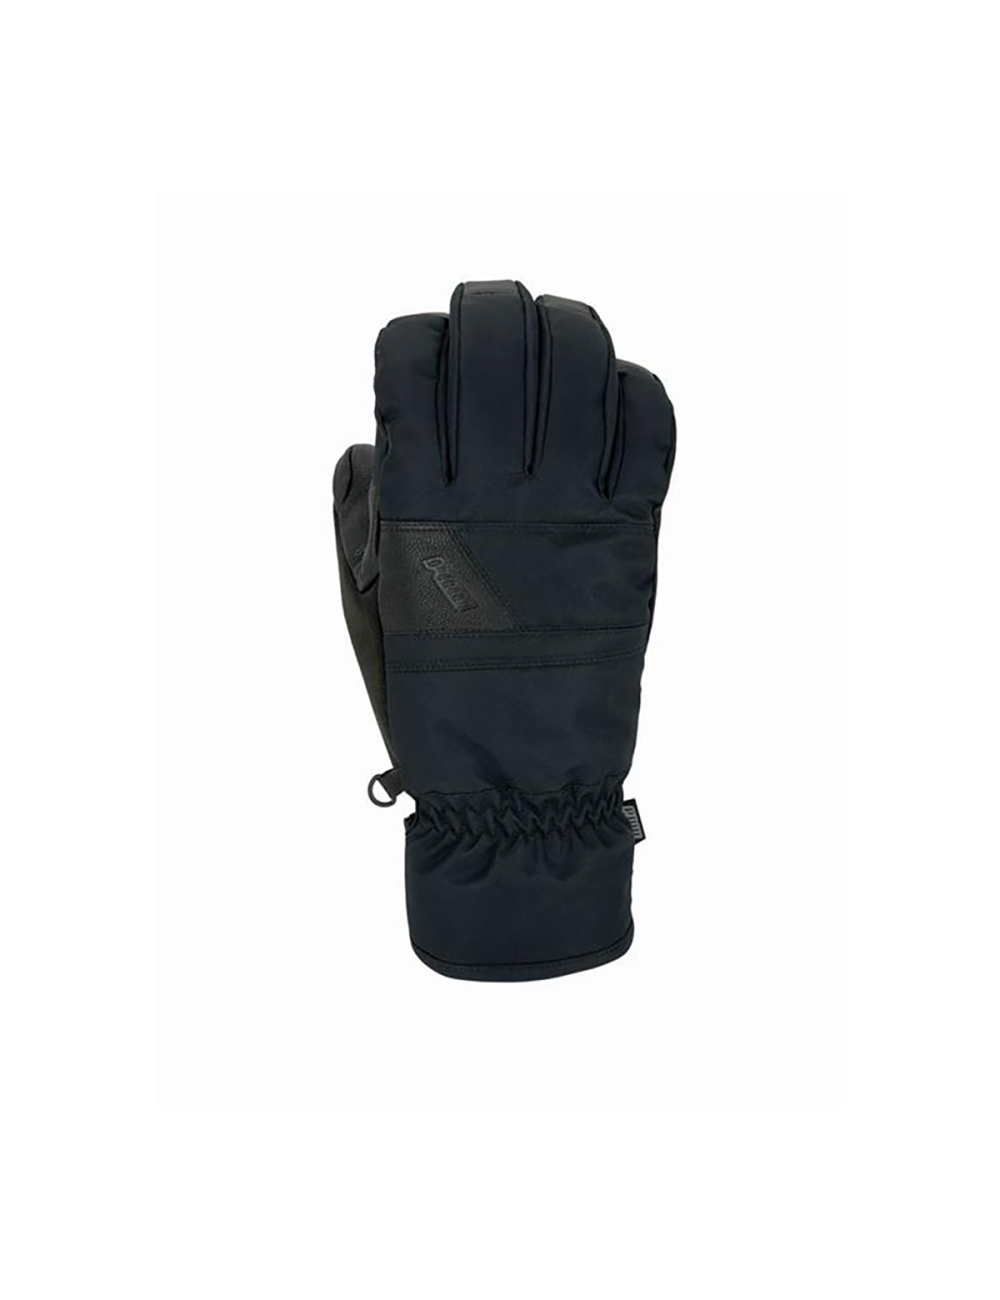 POW Verdict Glove - Black